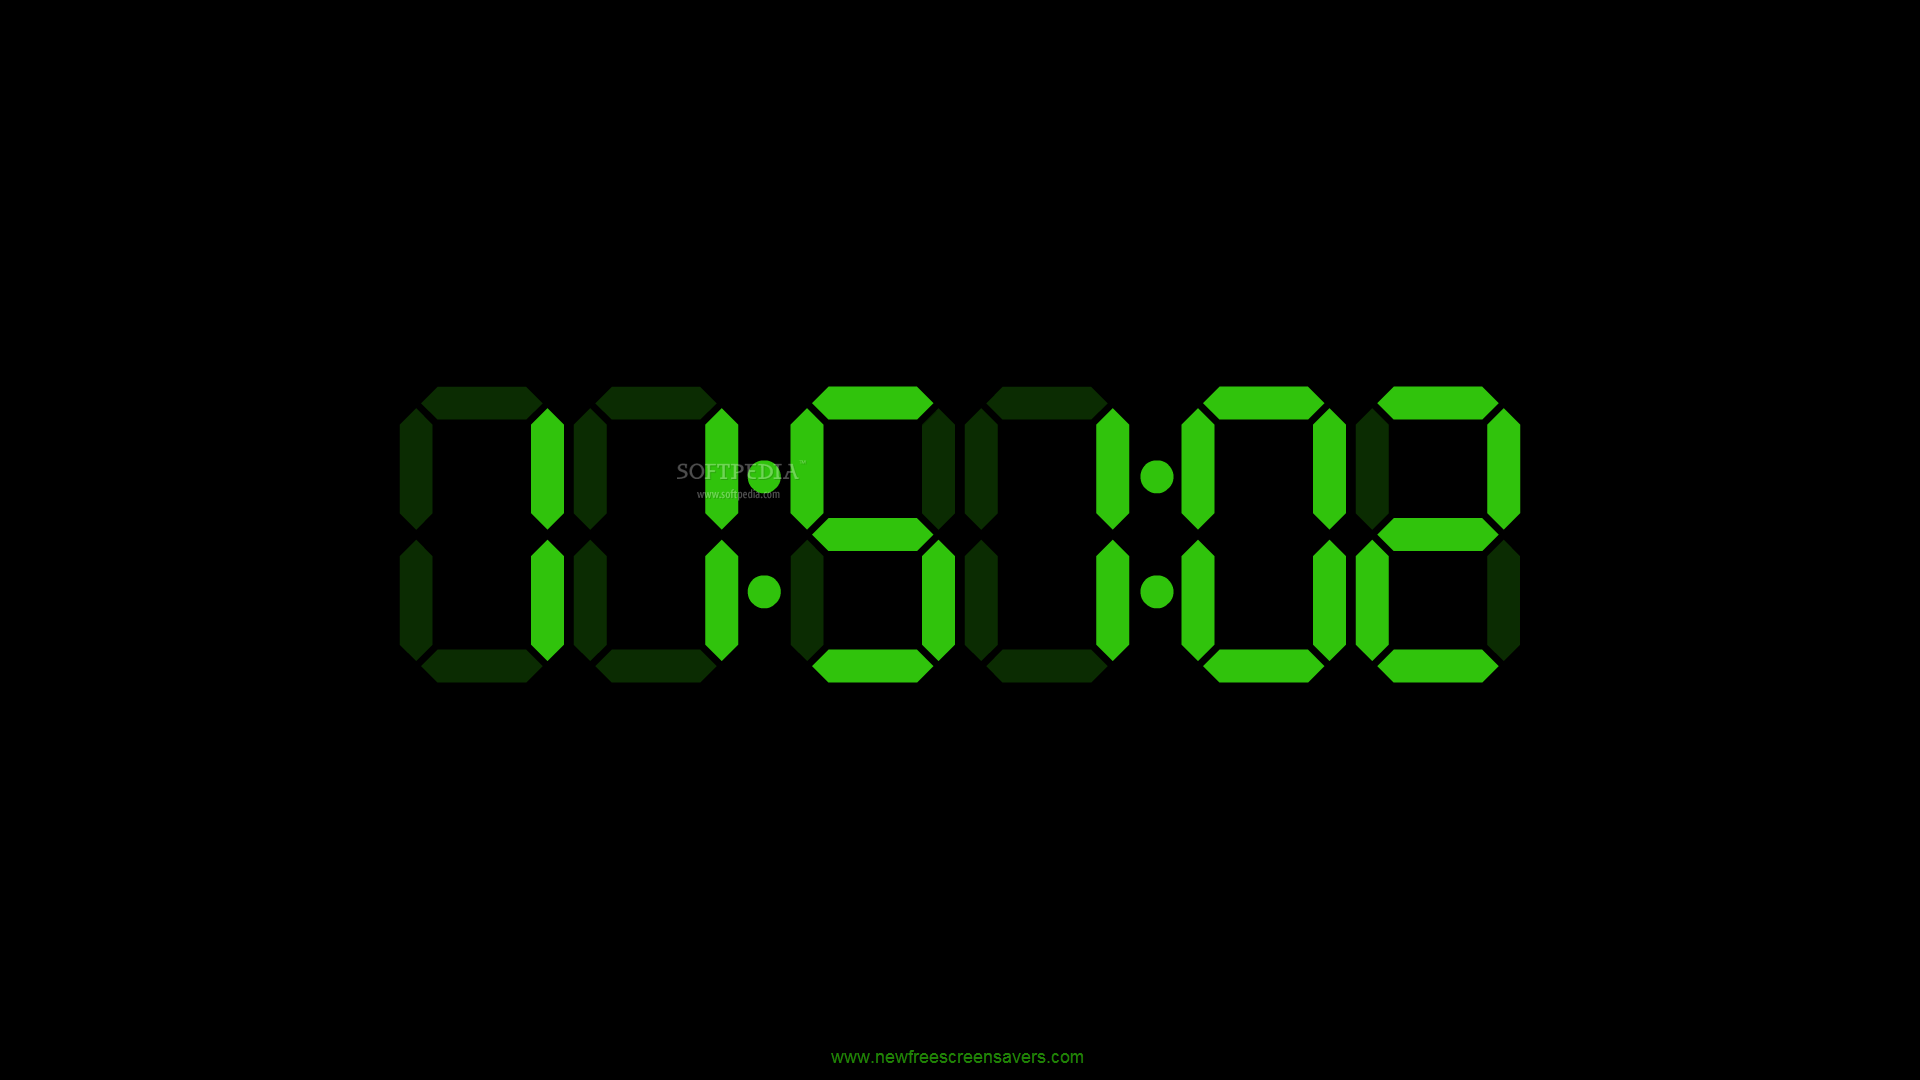 Электронные часы диджитал клок 1018. Часы Digital Clock 200730138828.4. Электронные часы на черном фоне. Скринсейвер электронные часы. Темы электронных часов